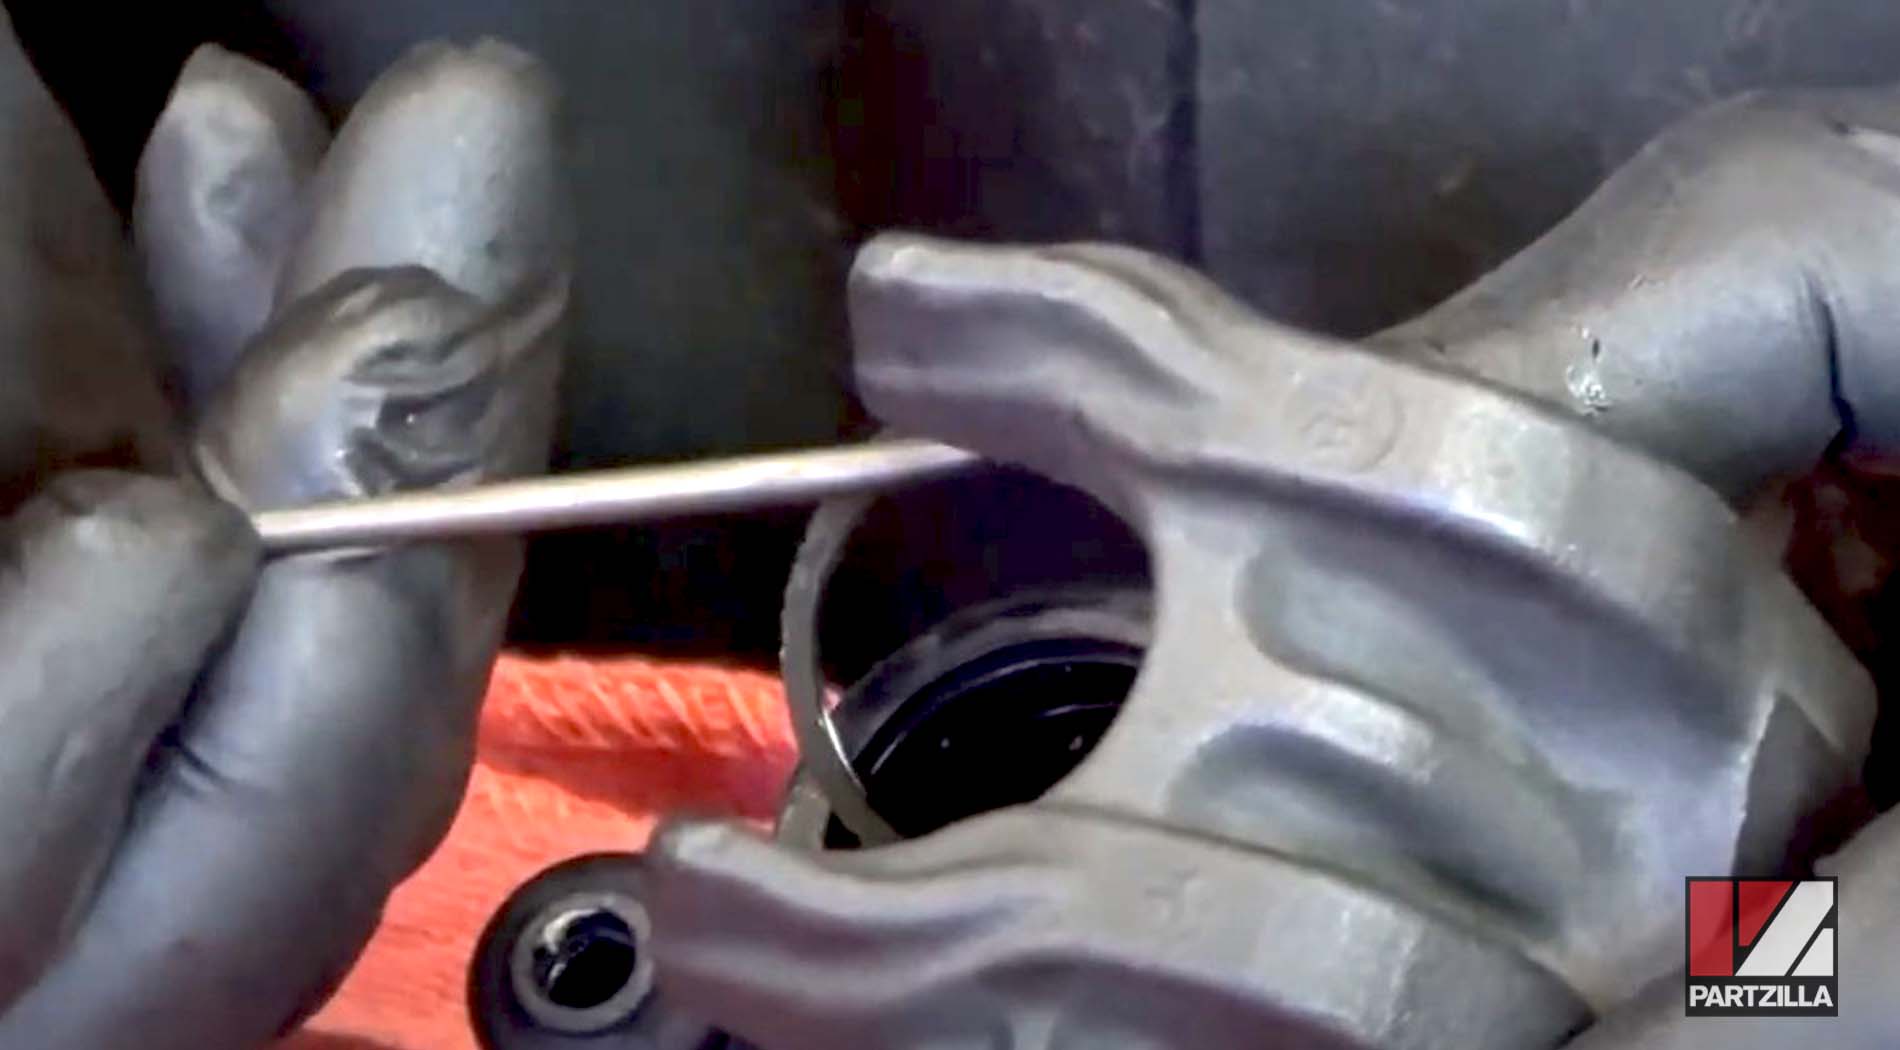 Honda CBR600 brake caliper seal removal